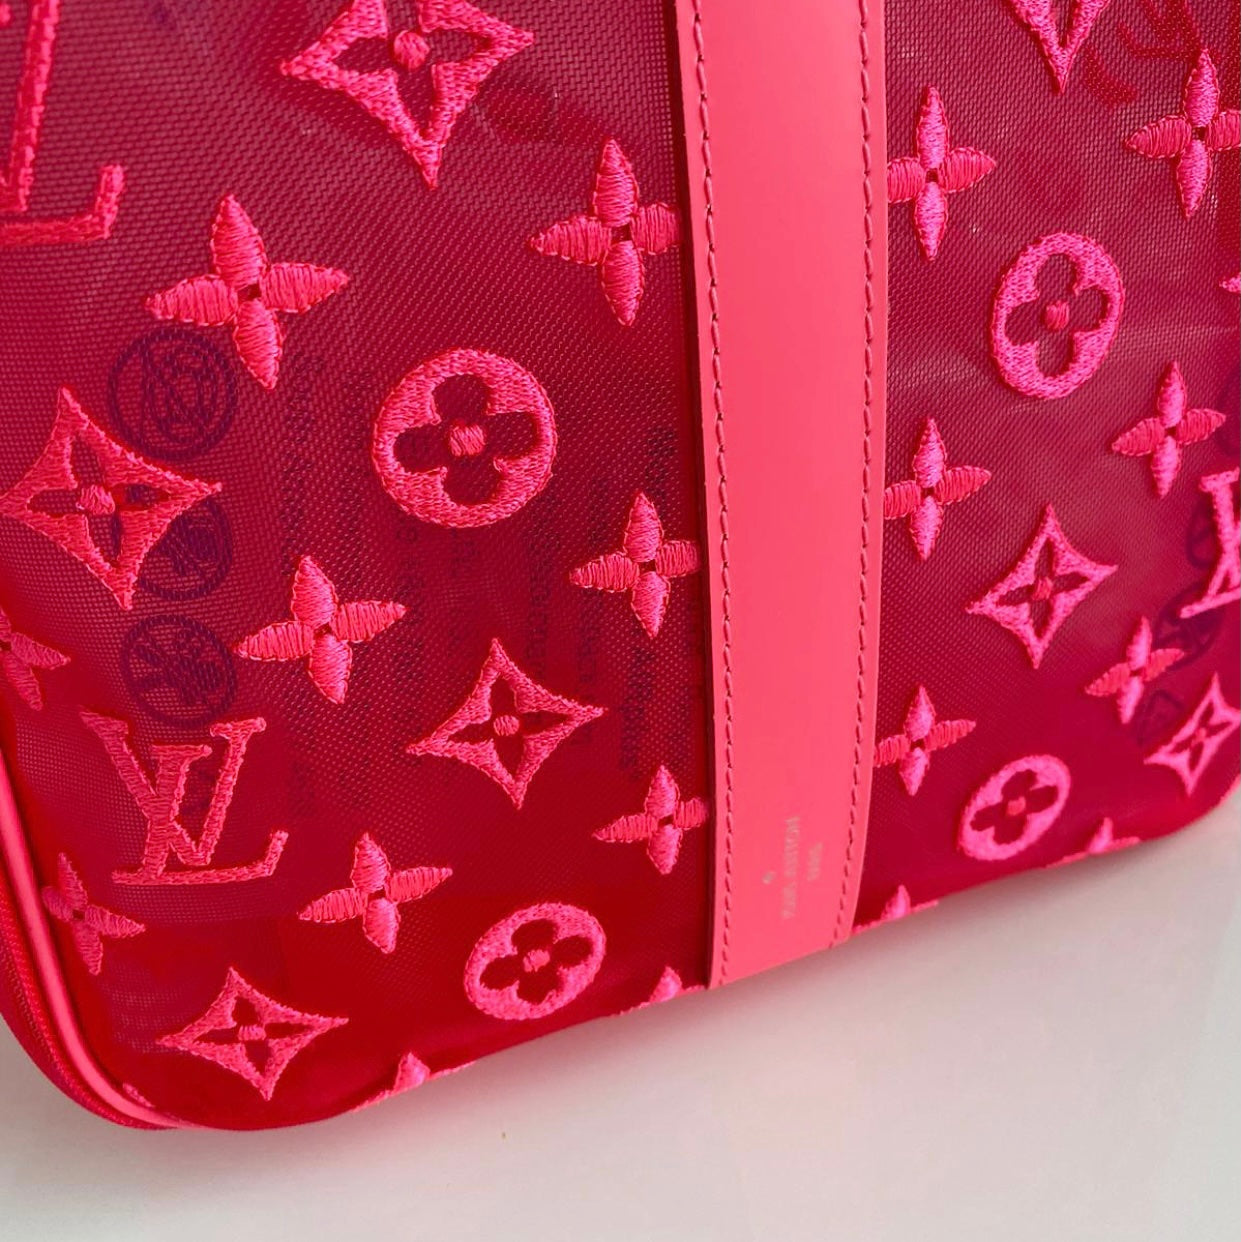 Louis Vuitton Keepall Large Mesh / Monogram Pink